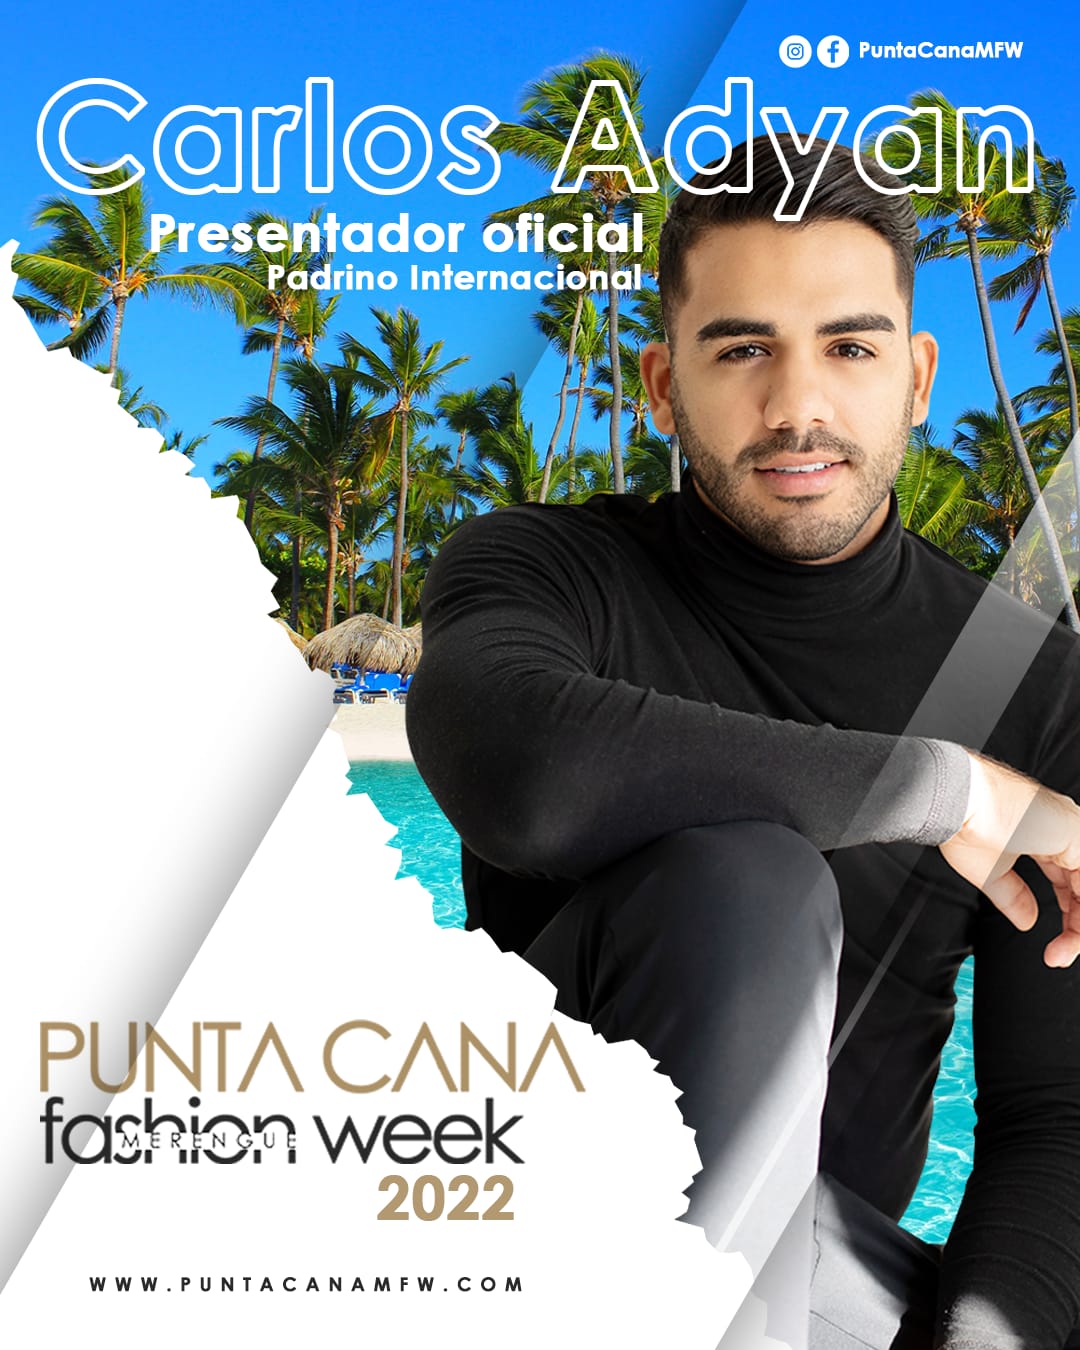 Carlos Adyan Conquistó al Punta Cana Fashion Week & a la República Dominicana